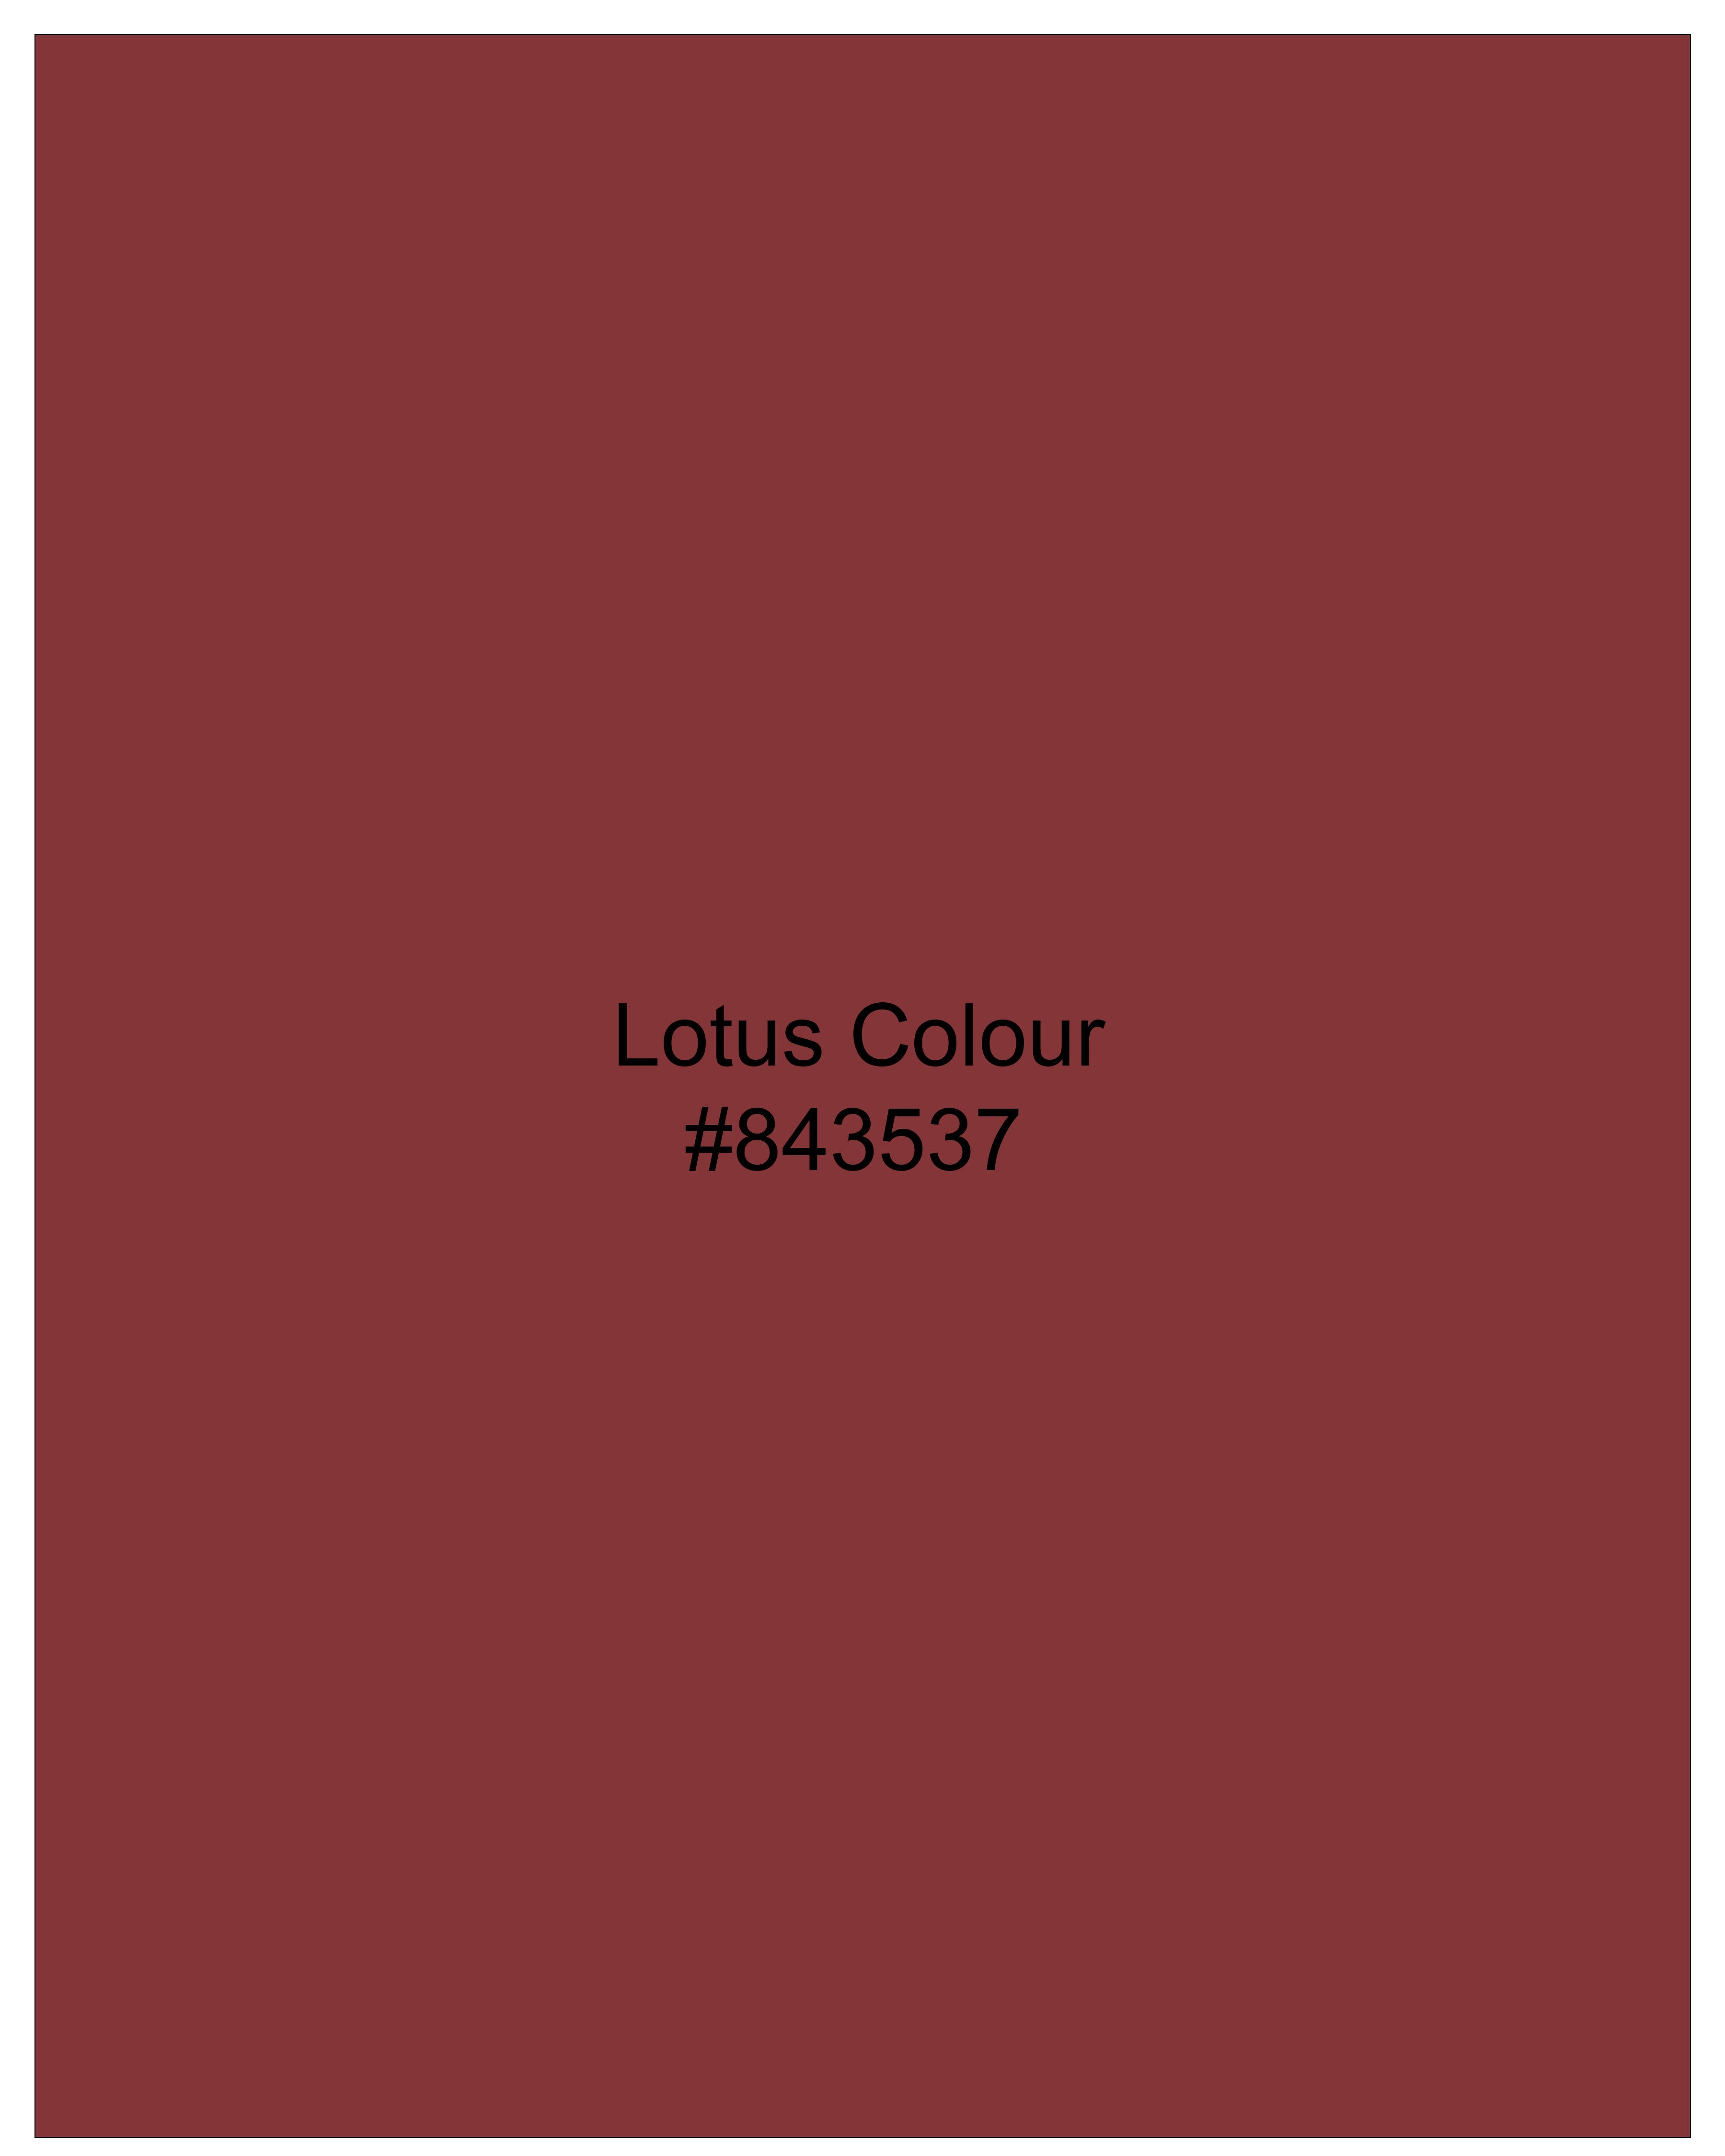 Lotus Red Plaid Premium Cotton Kurta Shirt 9256-KS-38,9256-KS-H-38,9256-KS-39,9256-KS-H-39,9256-KS-40,9256-KS-H-40,9256-KS-42,9256-KS-H-42,9256-KS-44,9256-KS-H-44,9256-KS-46,9256-KS-H-46,9256-KS-48,9256-KS-H-48,9256-KS-50,9256-KS-H-50,9256-KS-52,9256-KS-H-52